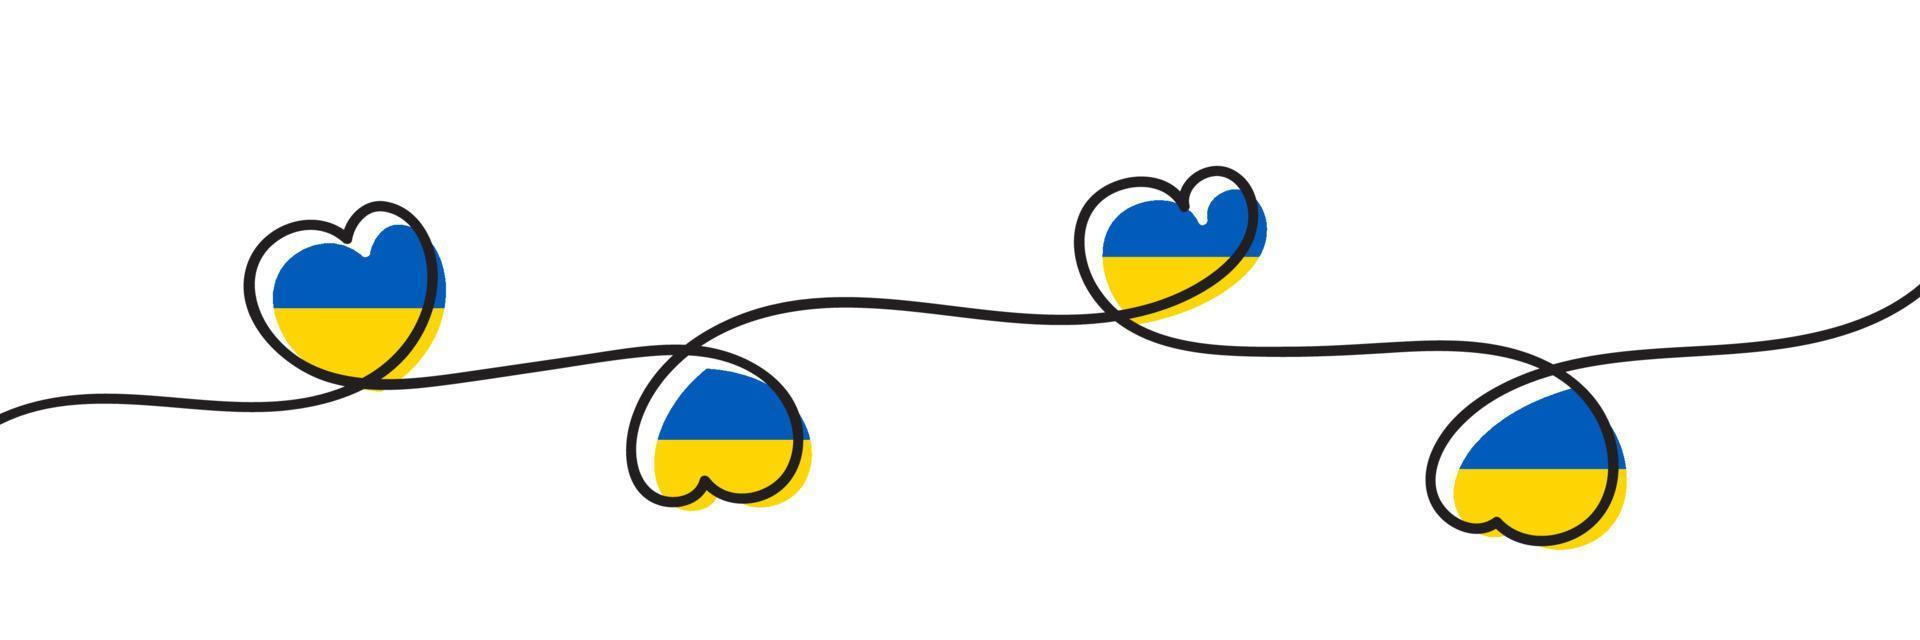 vlag van oekraïne in hartvorm. Oekraïens nationaal symbool. vector illustratie